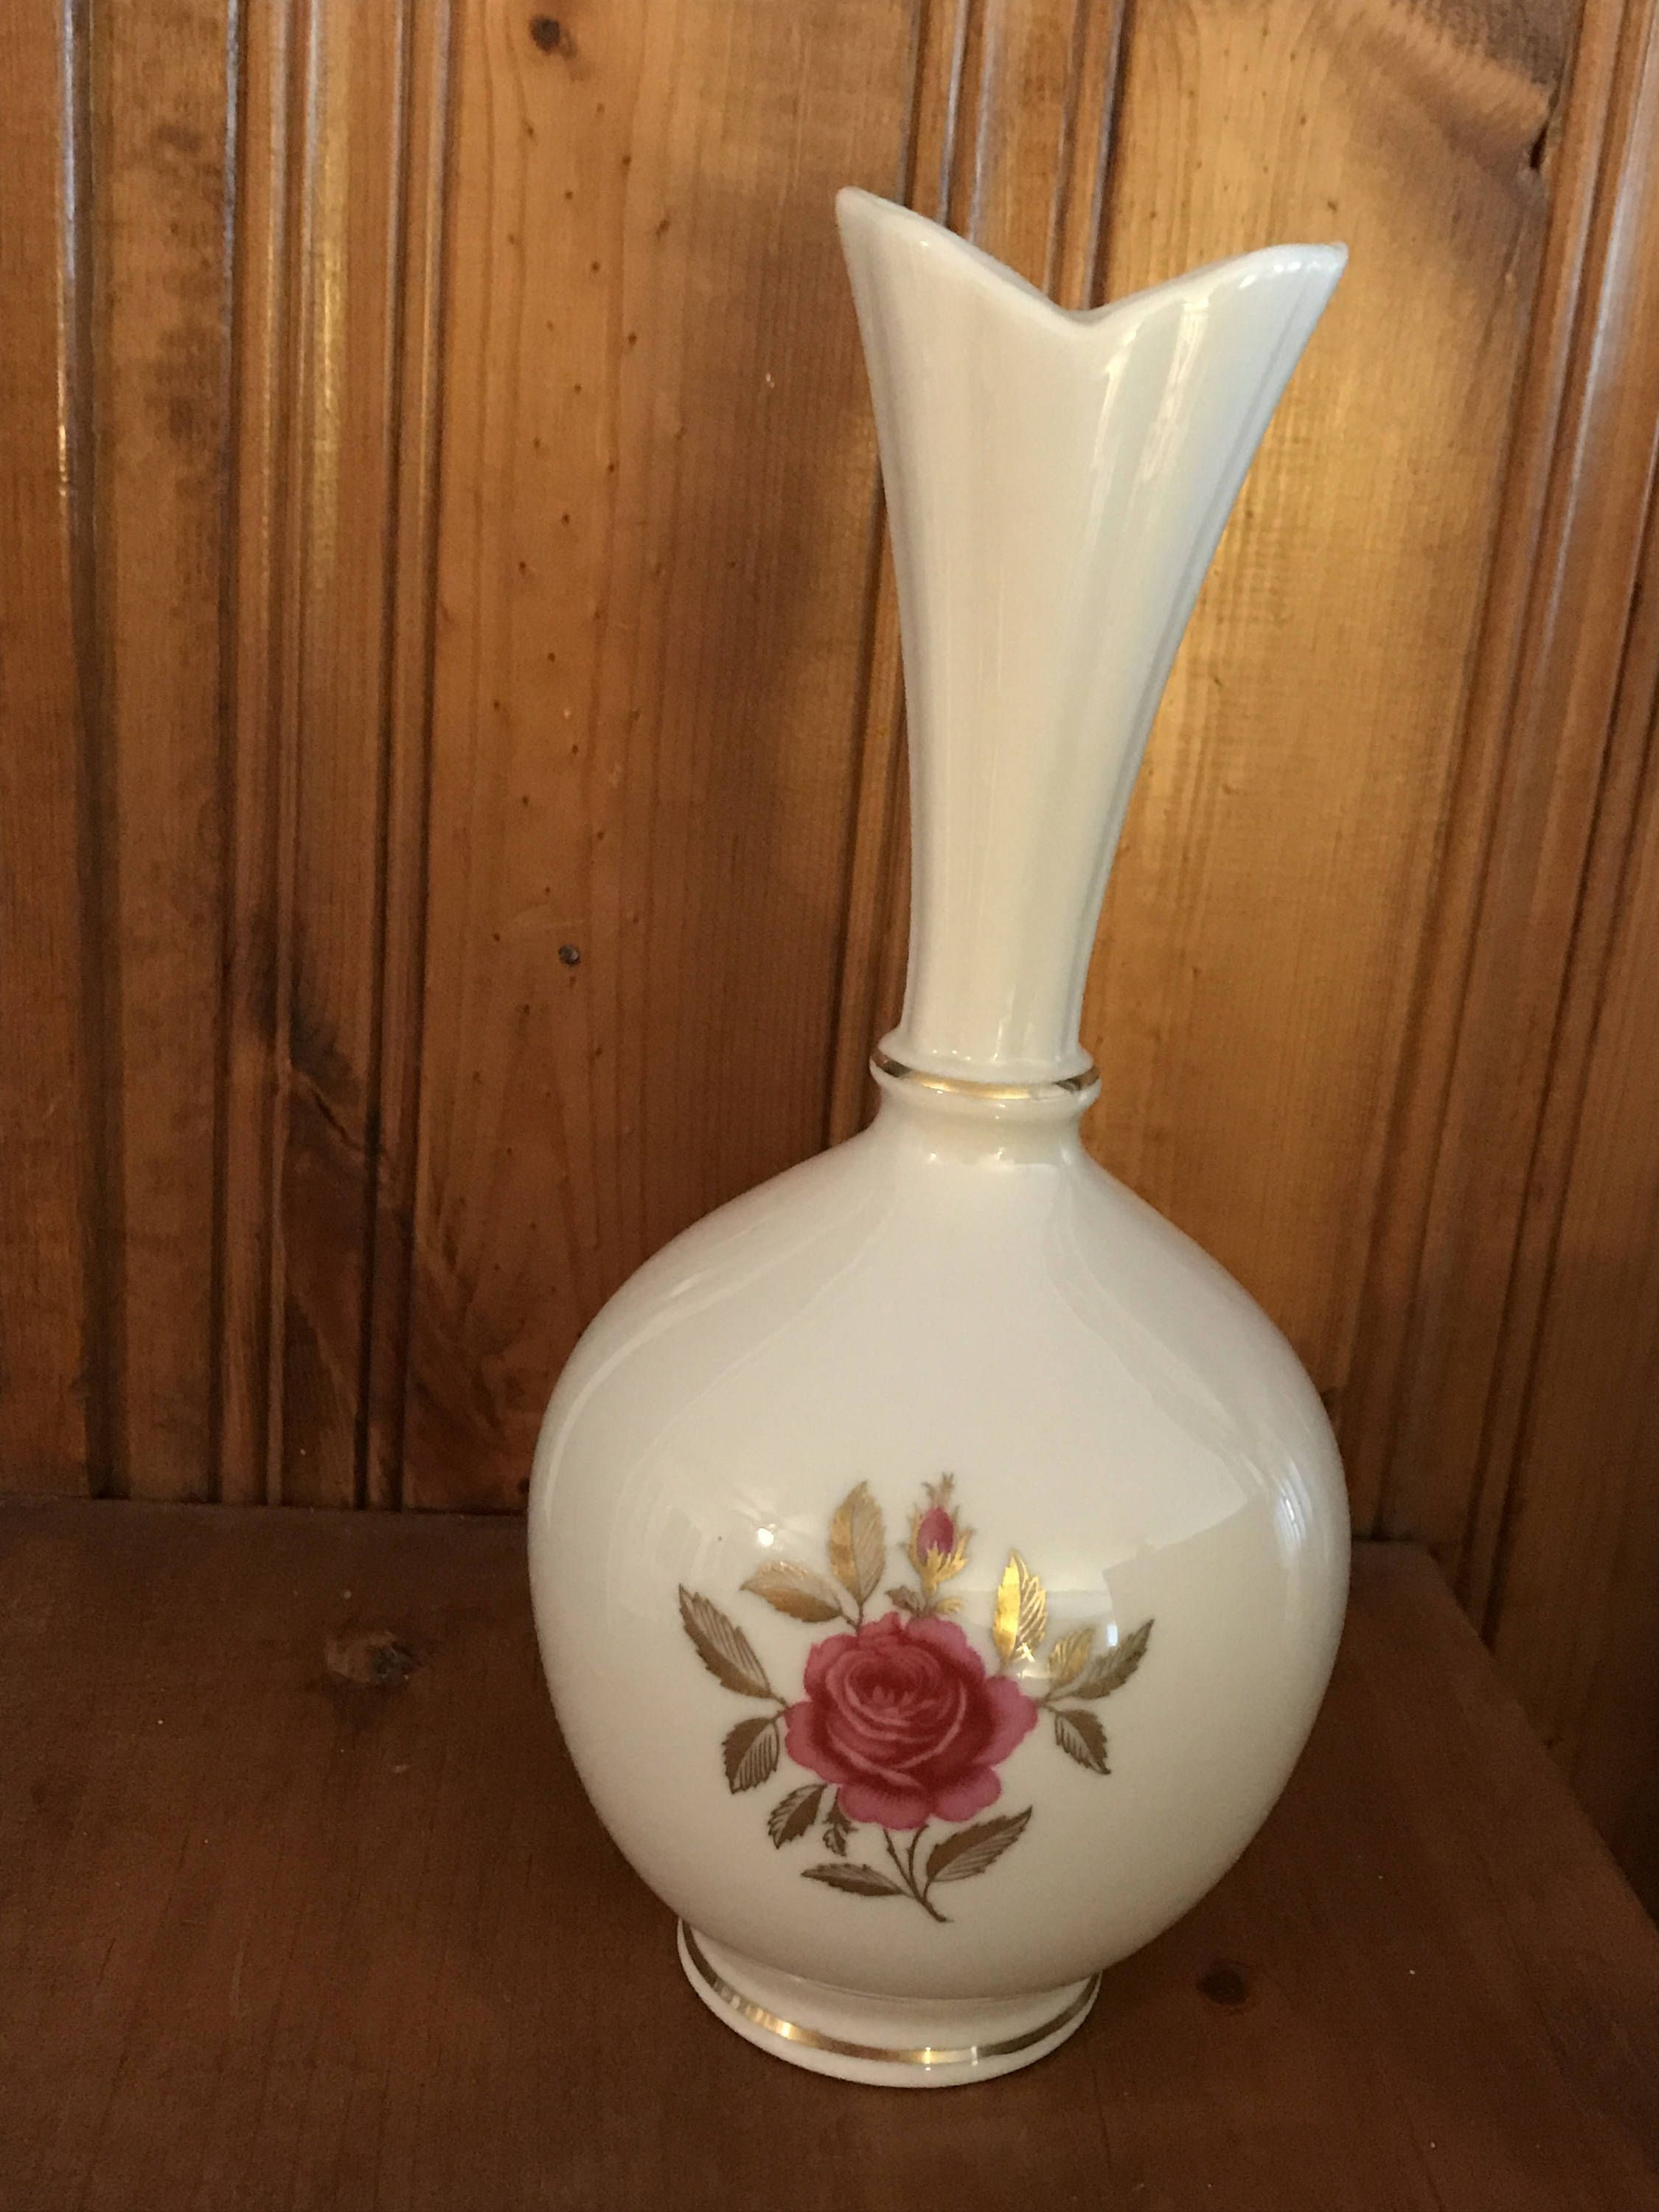 lenox crystal vase patterns of 43 lenox vase with gold trim the weekly world intended for vintage lenox floral rose bud vase with 24kt gold trim